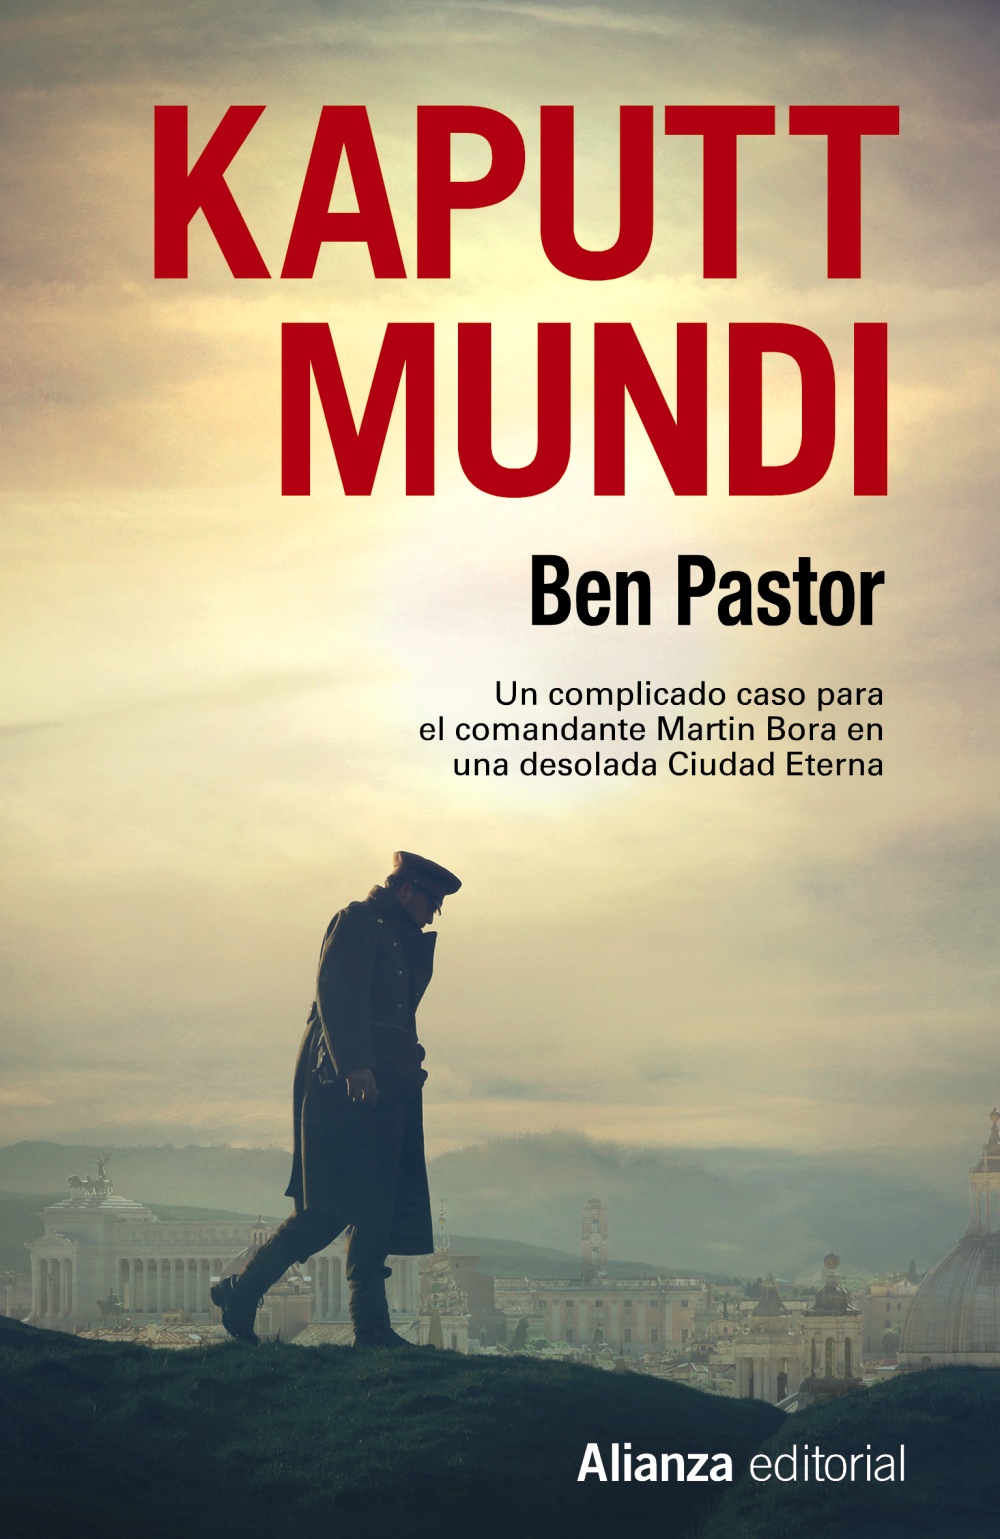 Ben Pastor - Kaputt Mundi, Ben Pastor (Martin Bora, 3) 9788491811169-kaputt-mundi